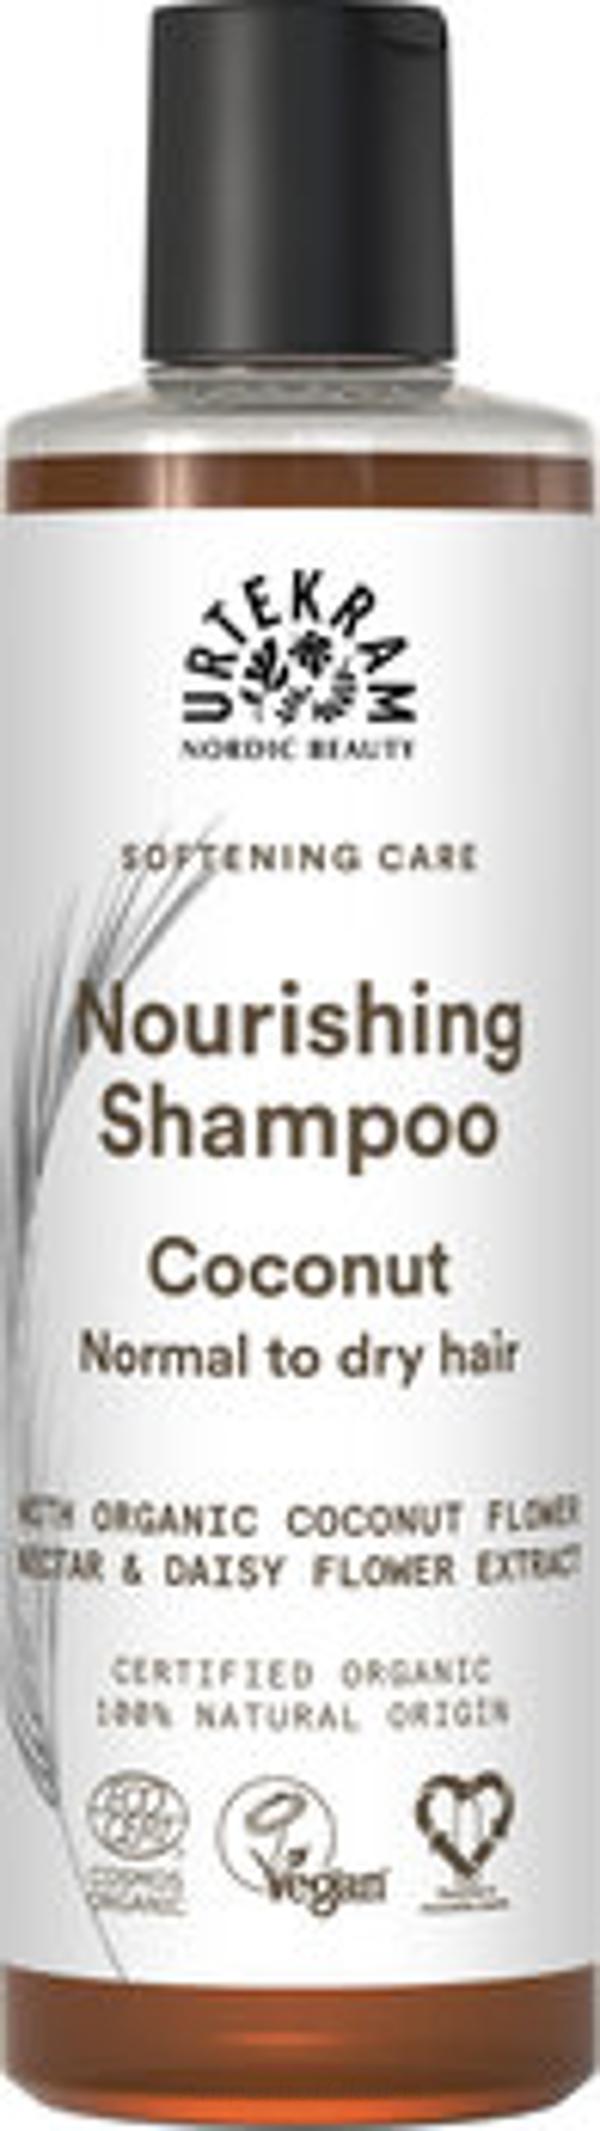 Produktfoto zu Shampoo Coconut 250 ml